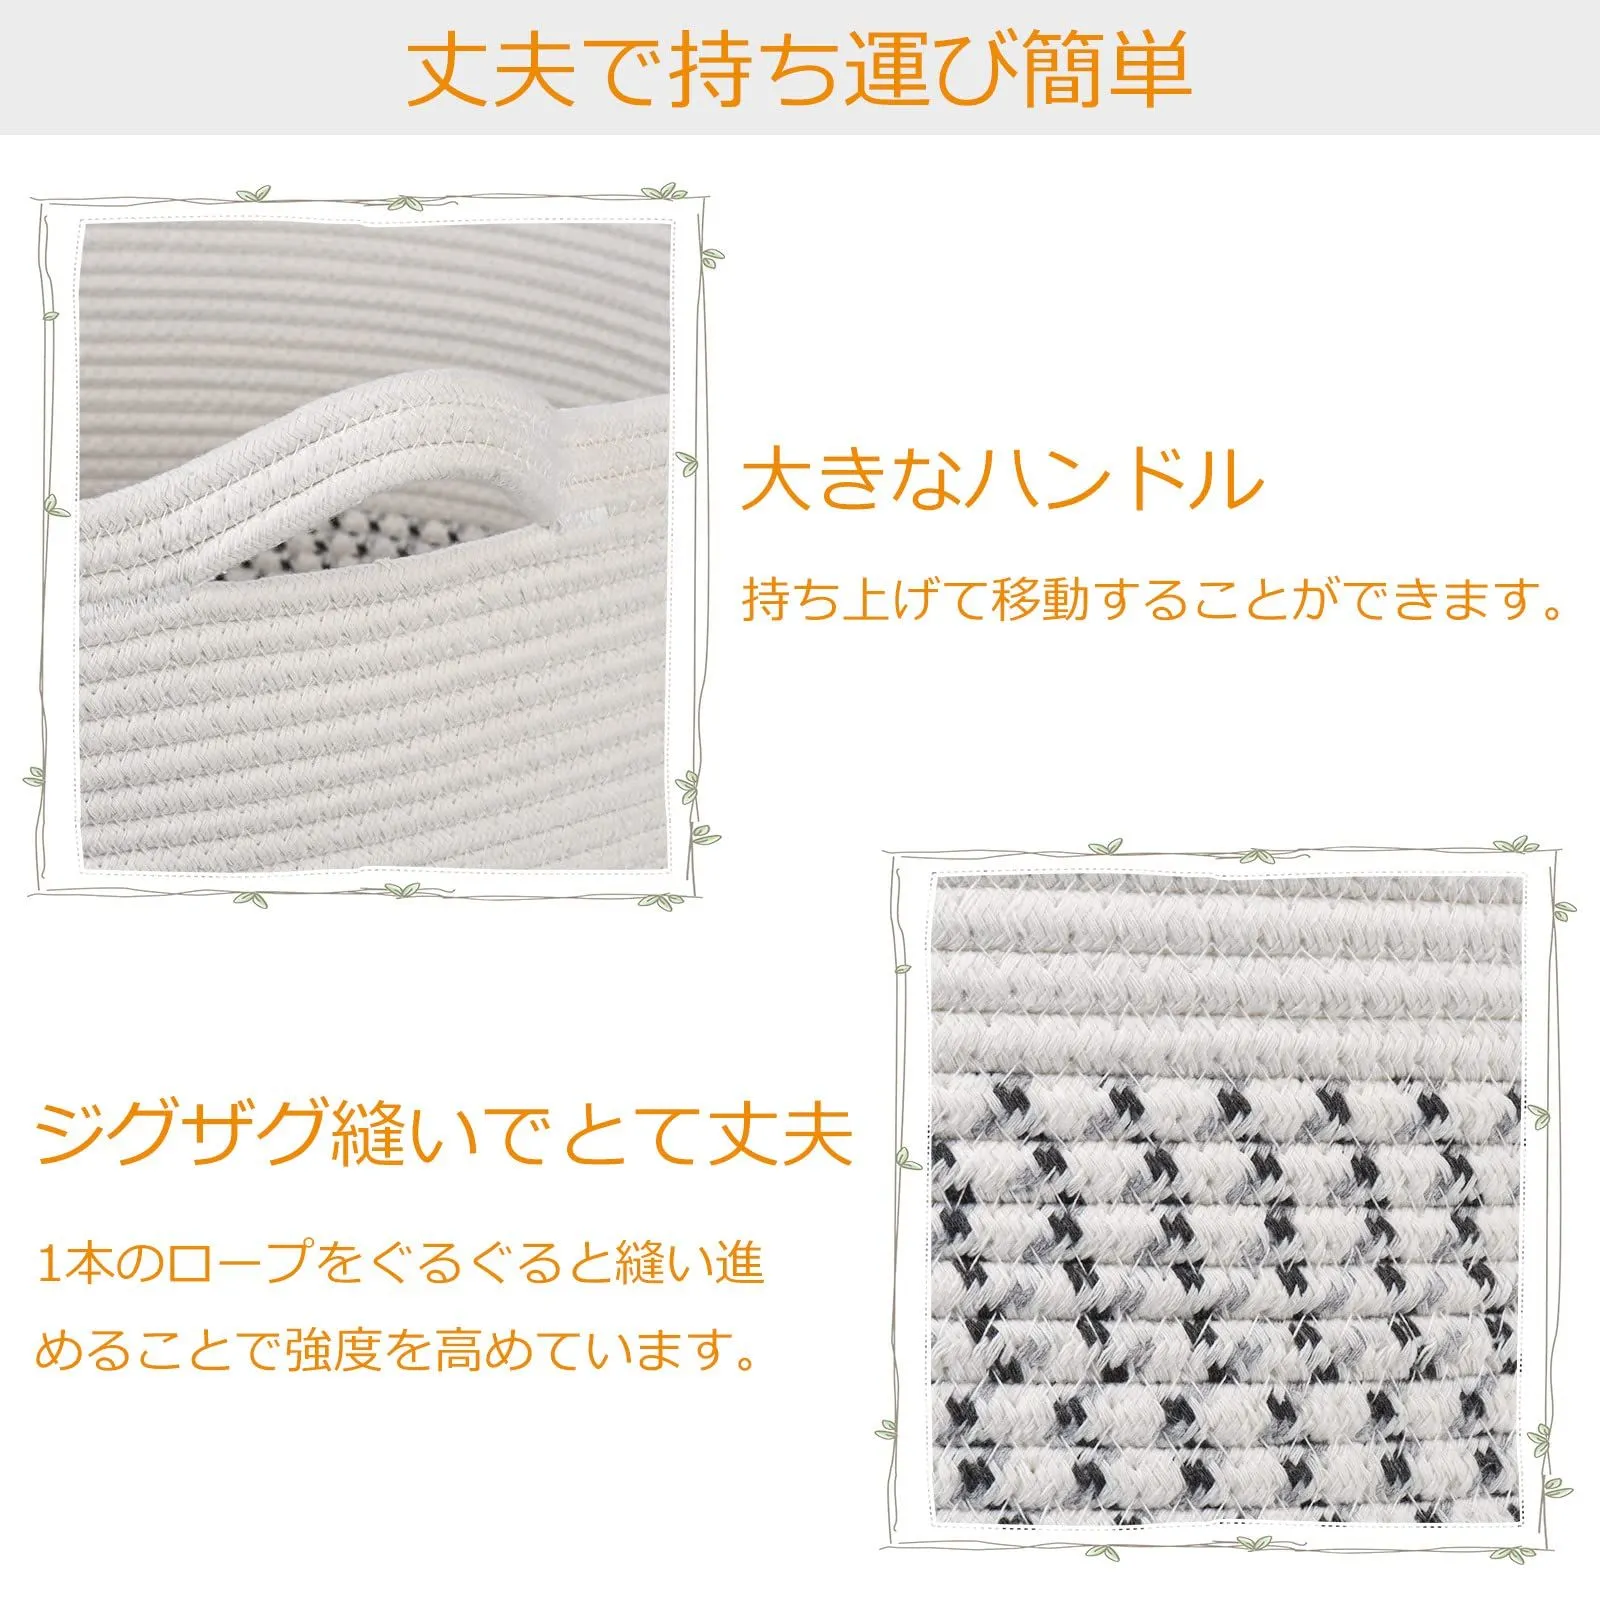 初回限定 Amazon.co.jp: Toplife収納バスケット 収納カゴ 洗濯カゴ持ち ...